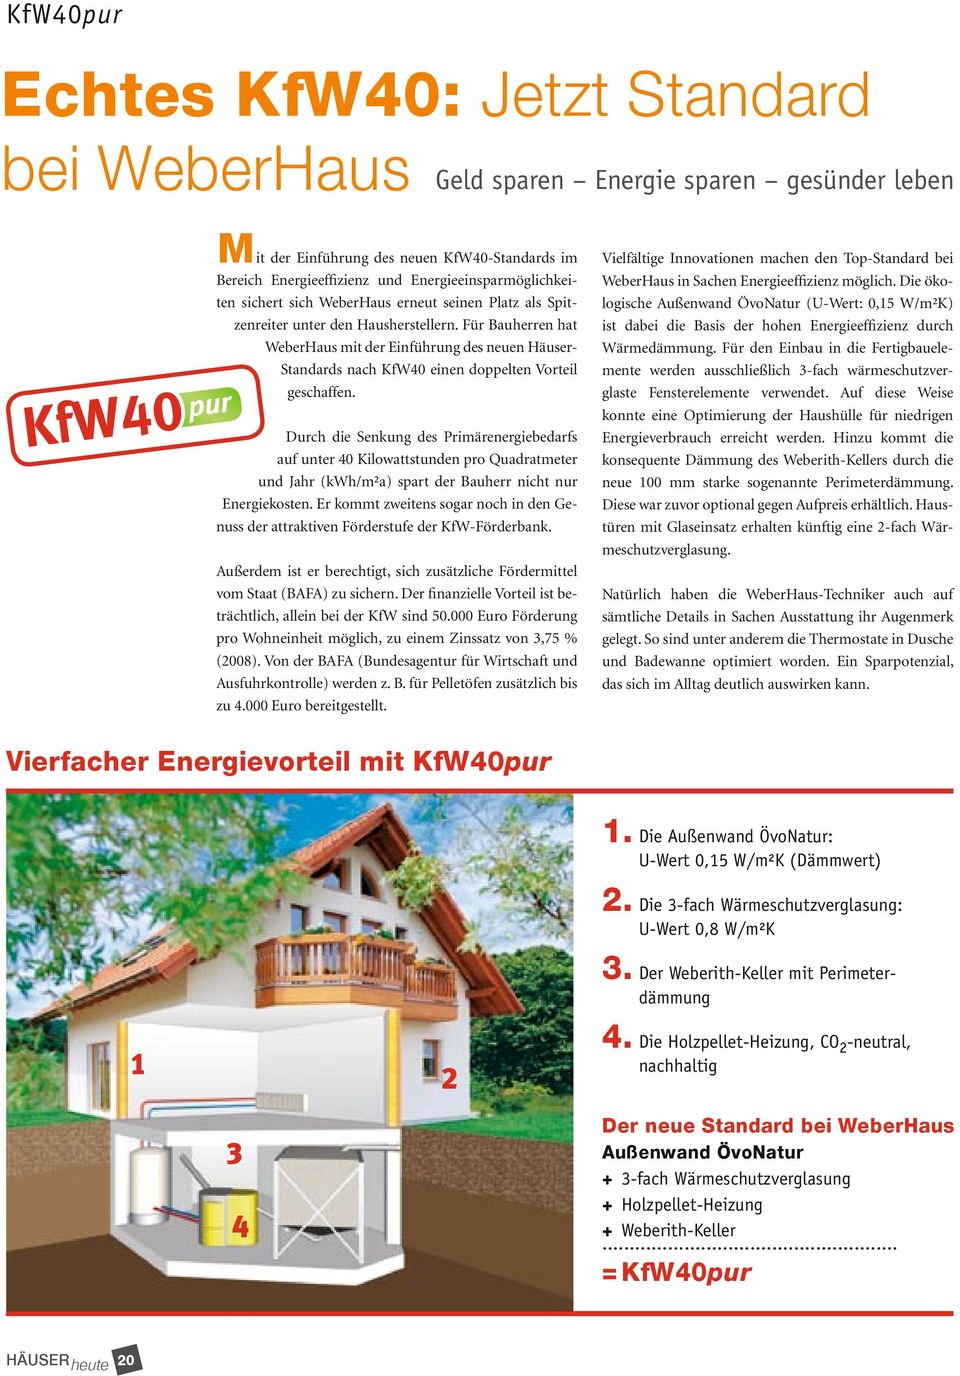 Für Bauherren hat WeberHaus mit der Einführung des neuen Häuser- Standards nach KfW40 einen doppelten Vorteil geschaffen.